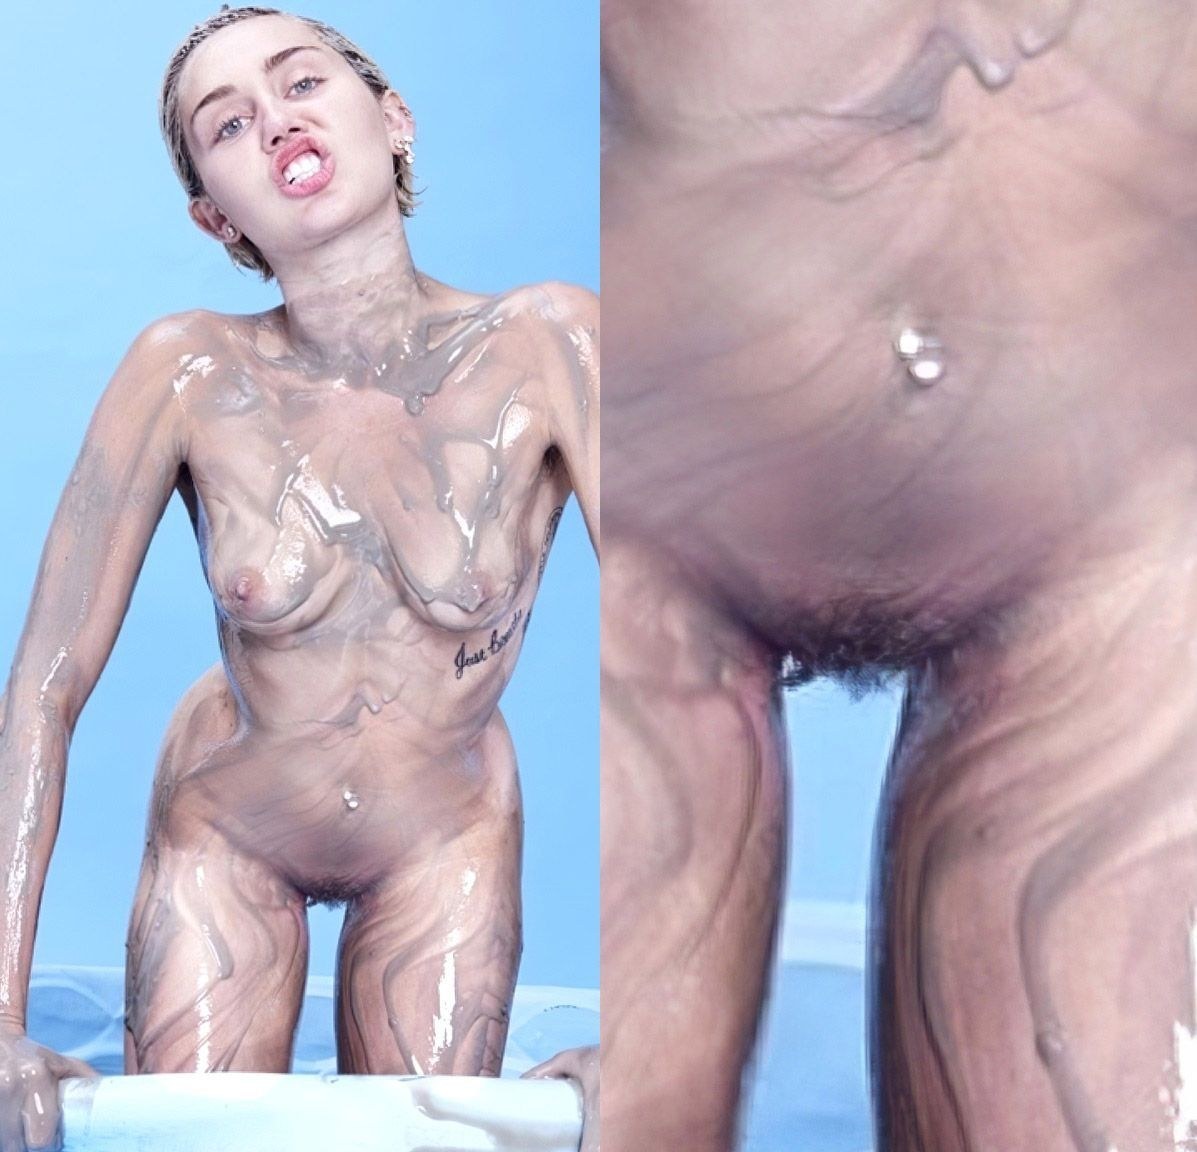 Miley cyrus recent nudes